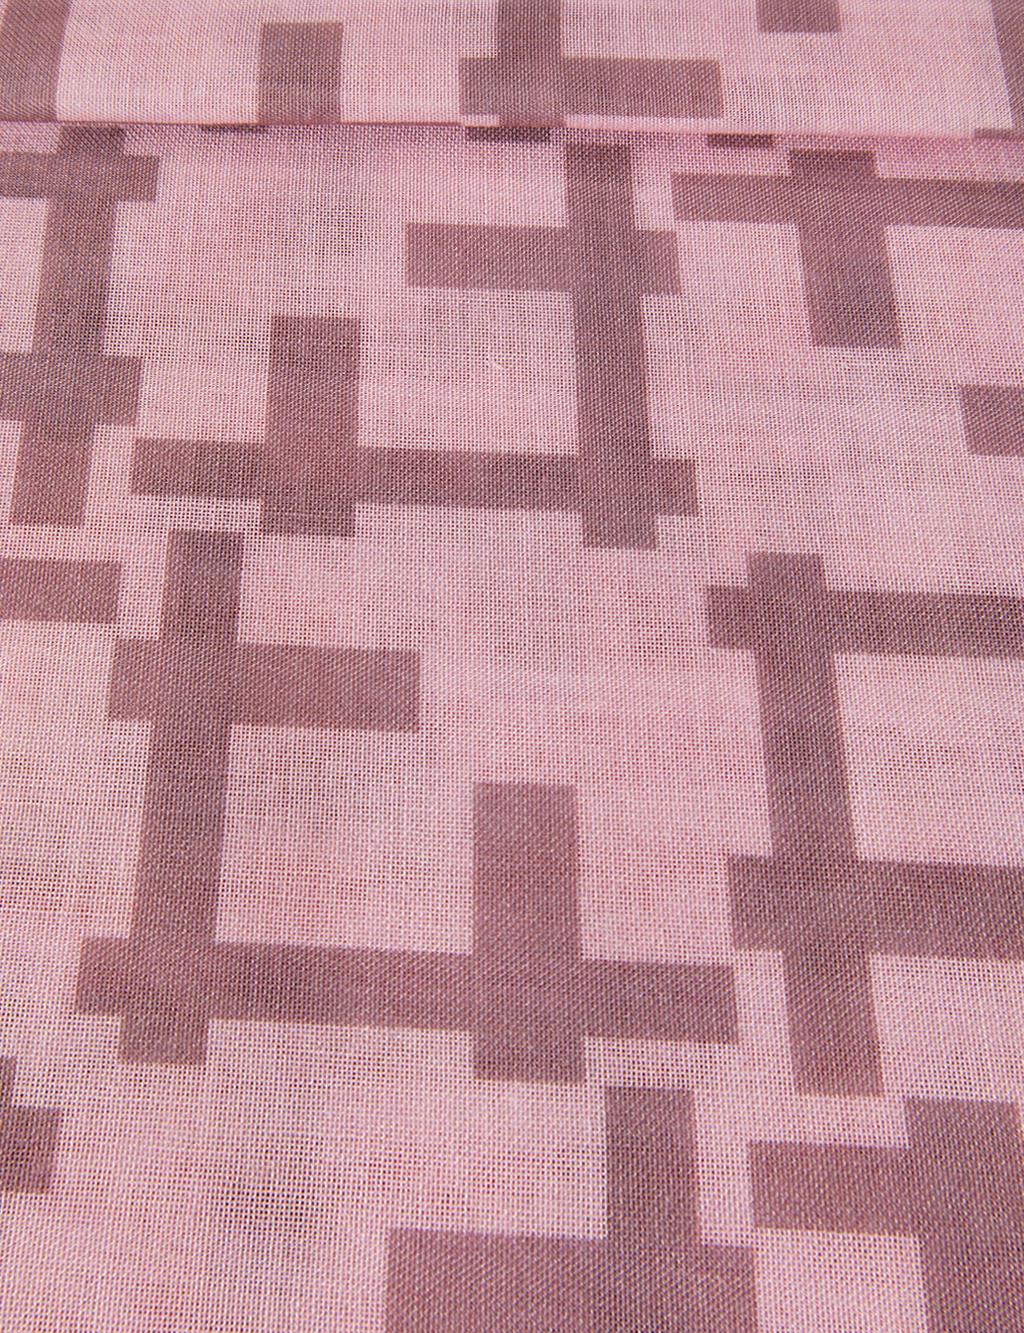 Mixed Pattern PES Shawl A21 SAL07 Pink